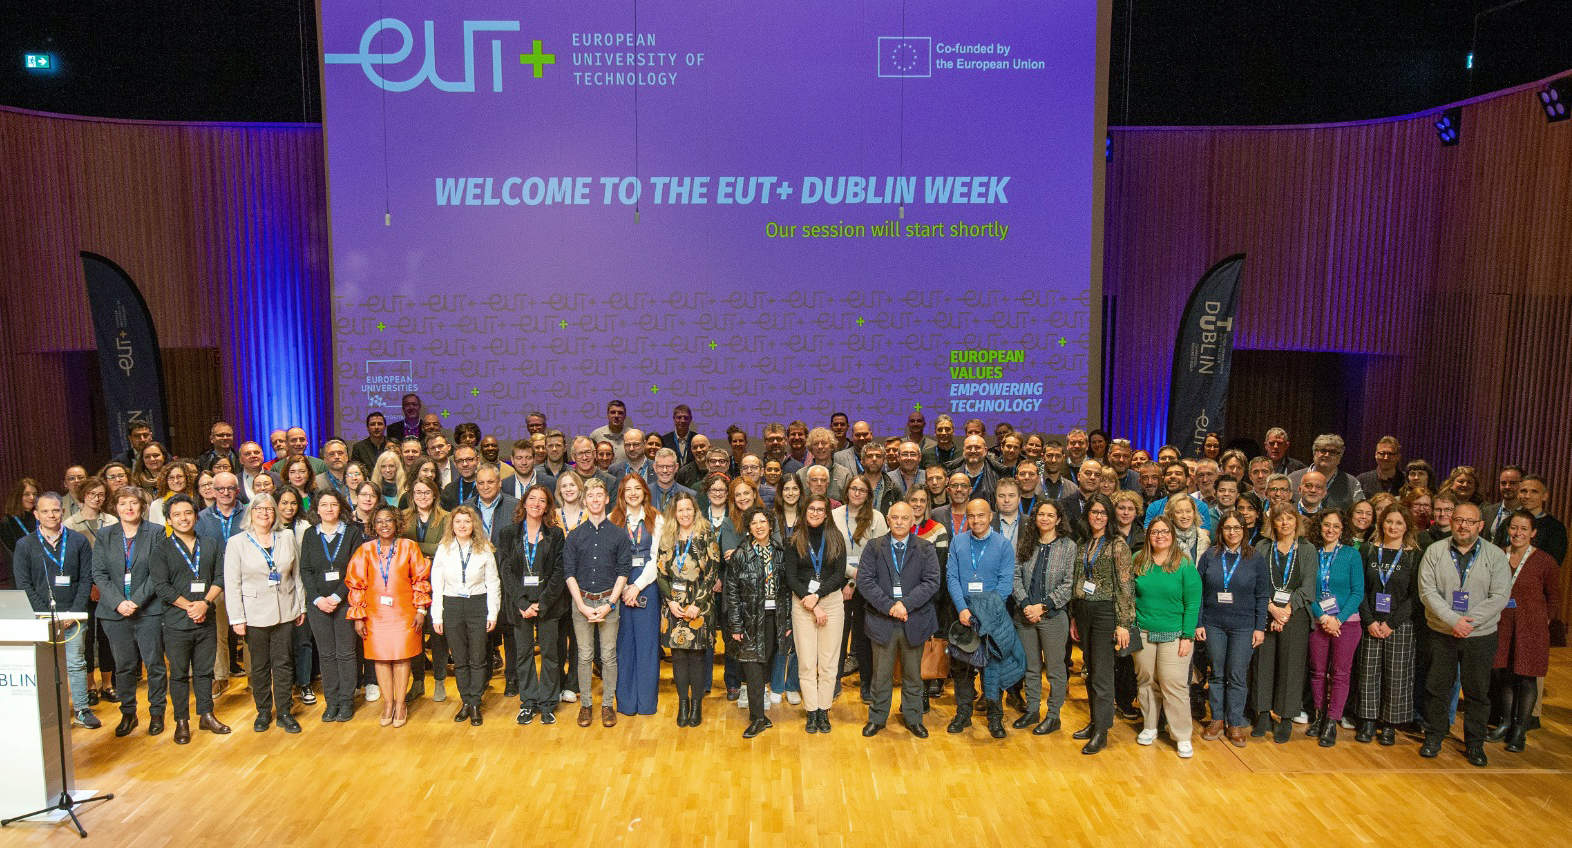 Работна седмица на представители на Европейски технологичен университет EUT+ в ТУ – Дъблин.